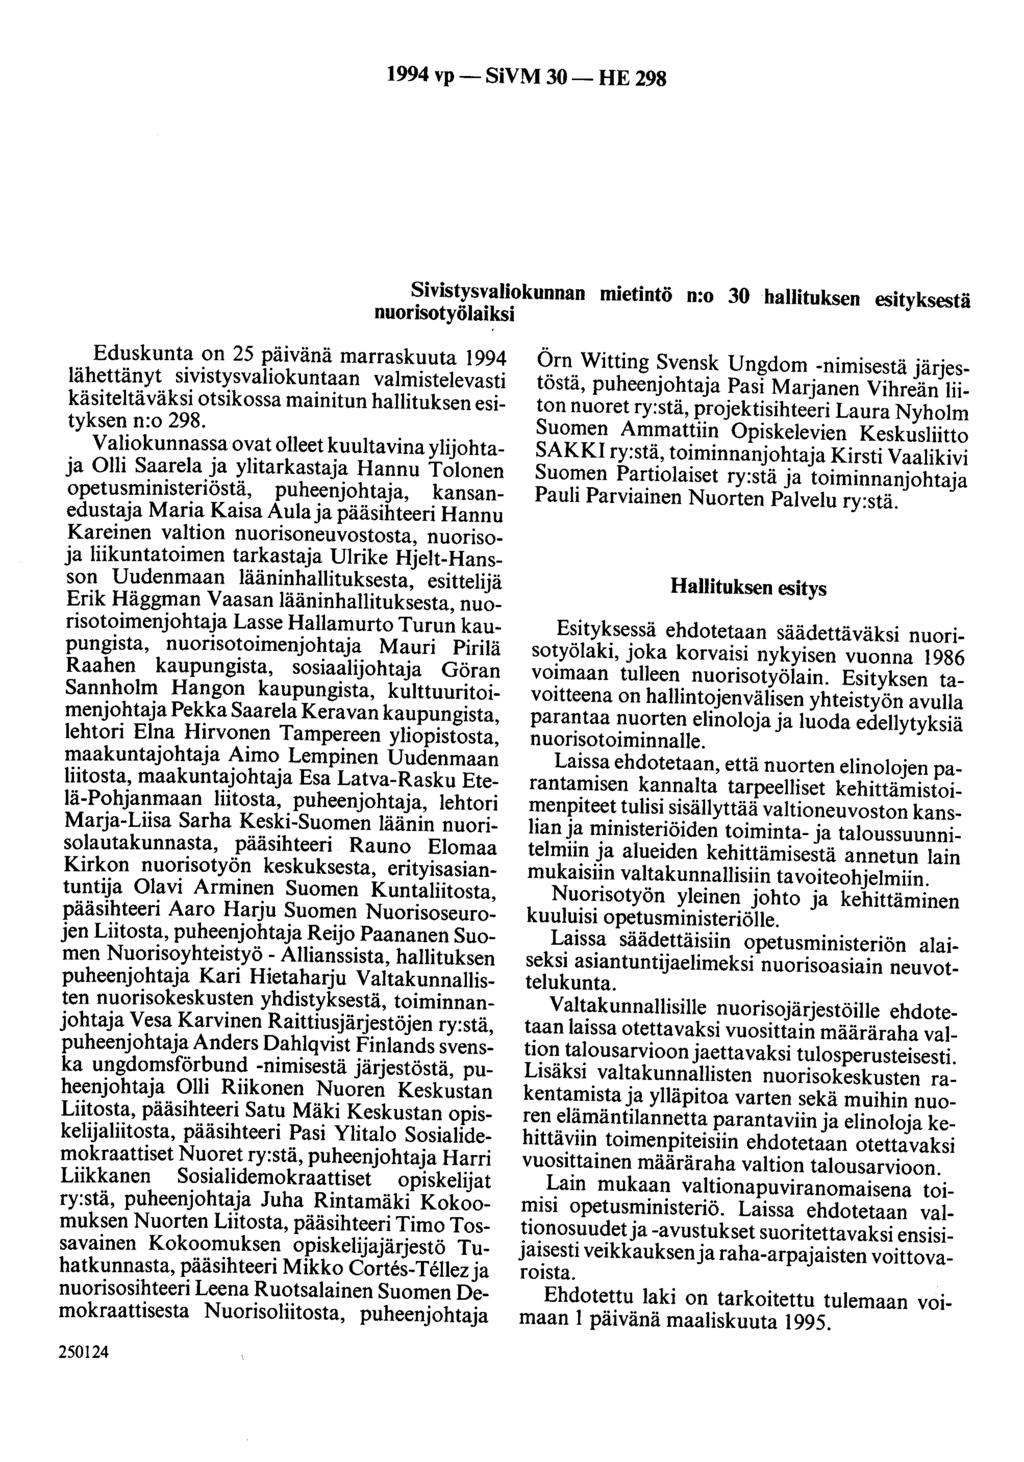 1994 vp- SiVM 30-HE 298 Sivistysvaliokunnan mietintö n:o 30 hallituksen esityksestä nuorisotyölaiksi Eduskunta on 25 päivänä marraskuuta 1994 lähettänyt sivistysvaliokuntaan valmistelevasti